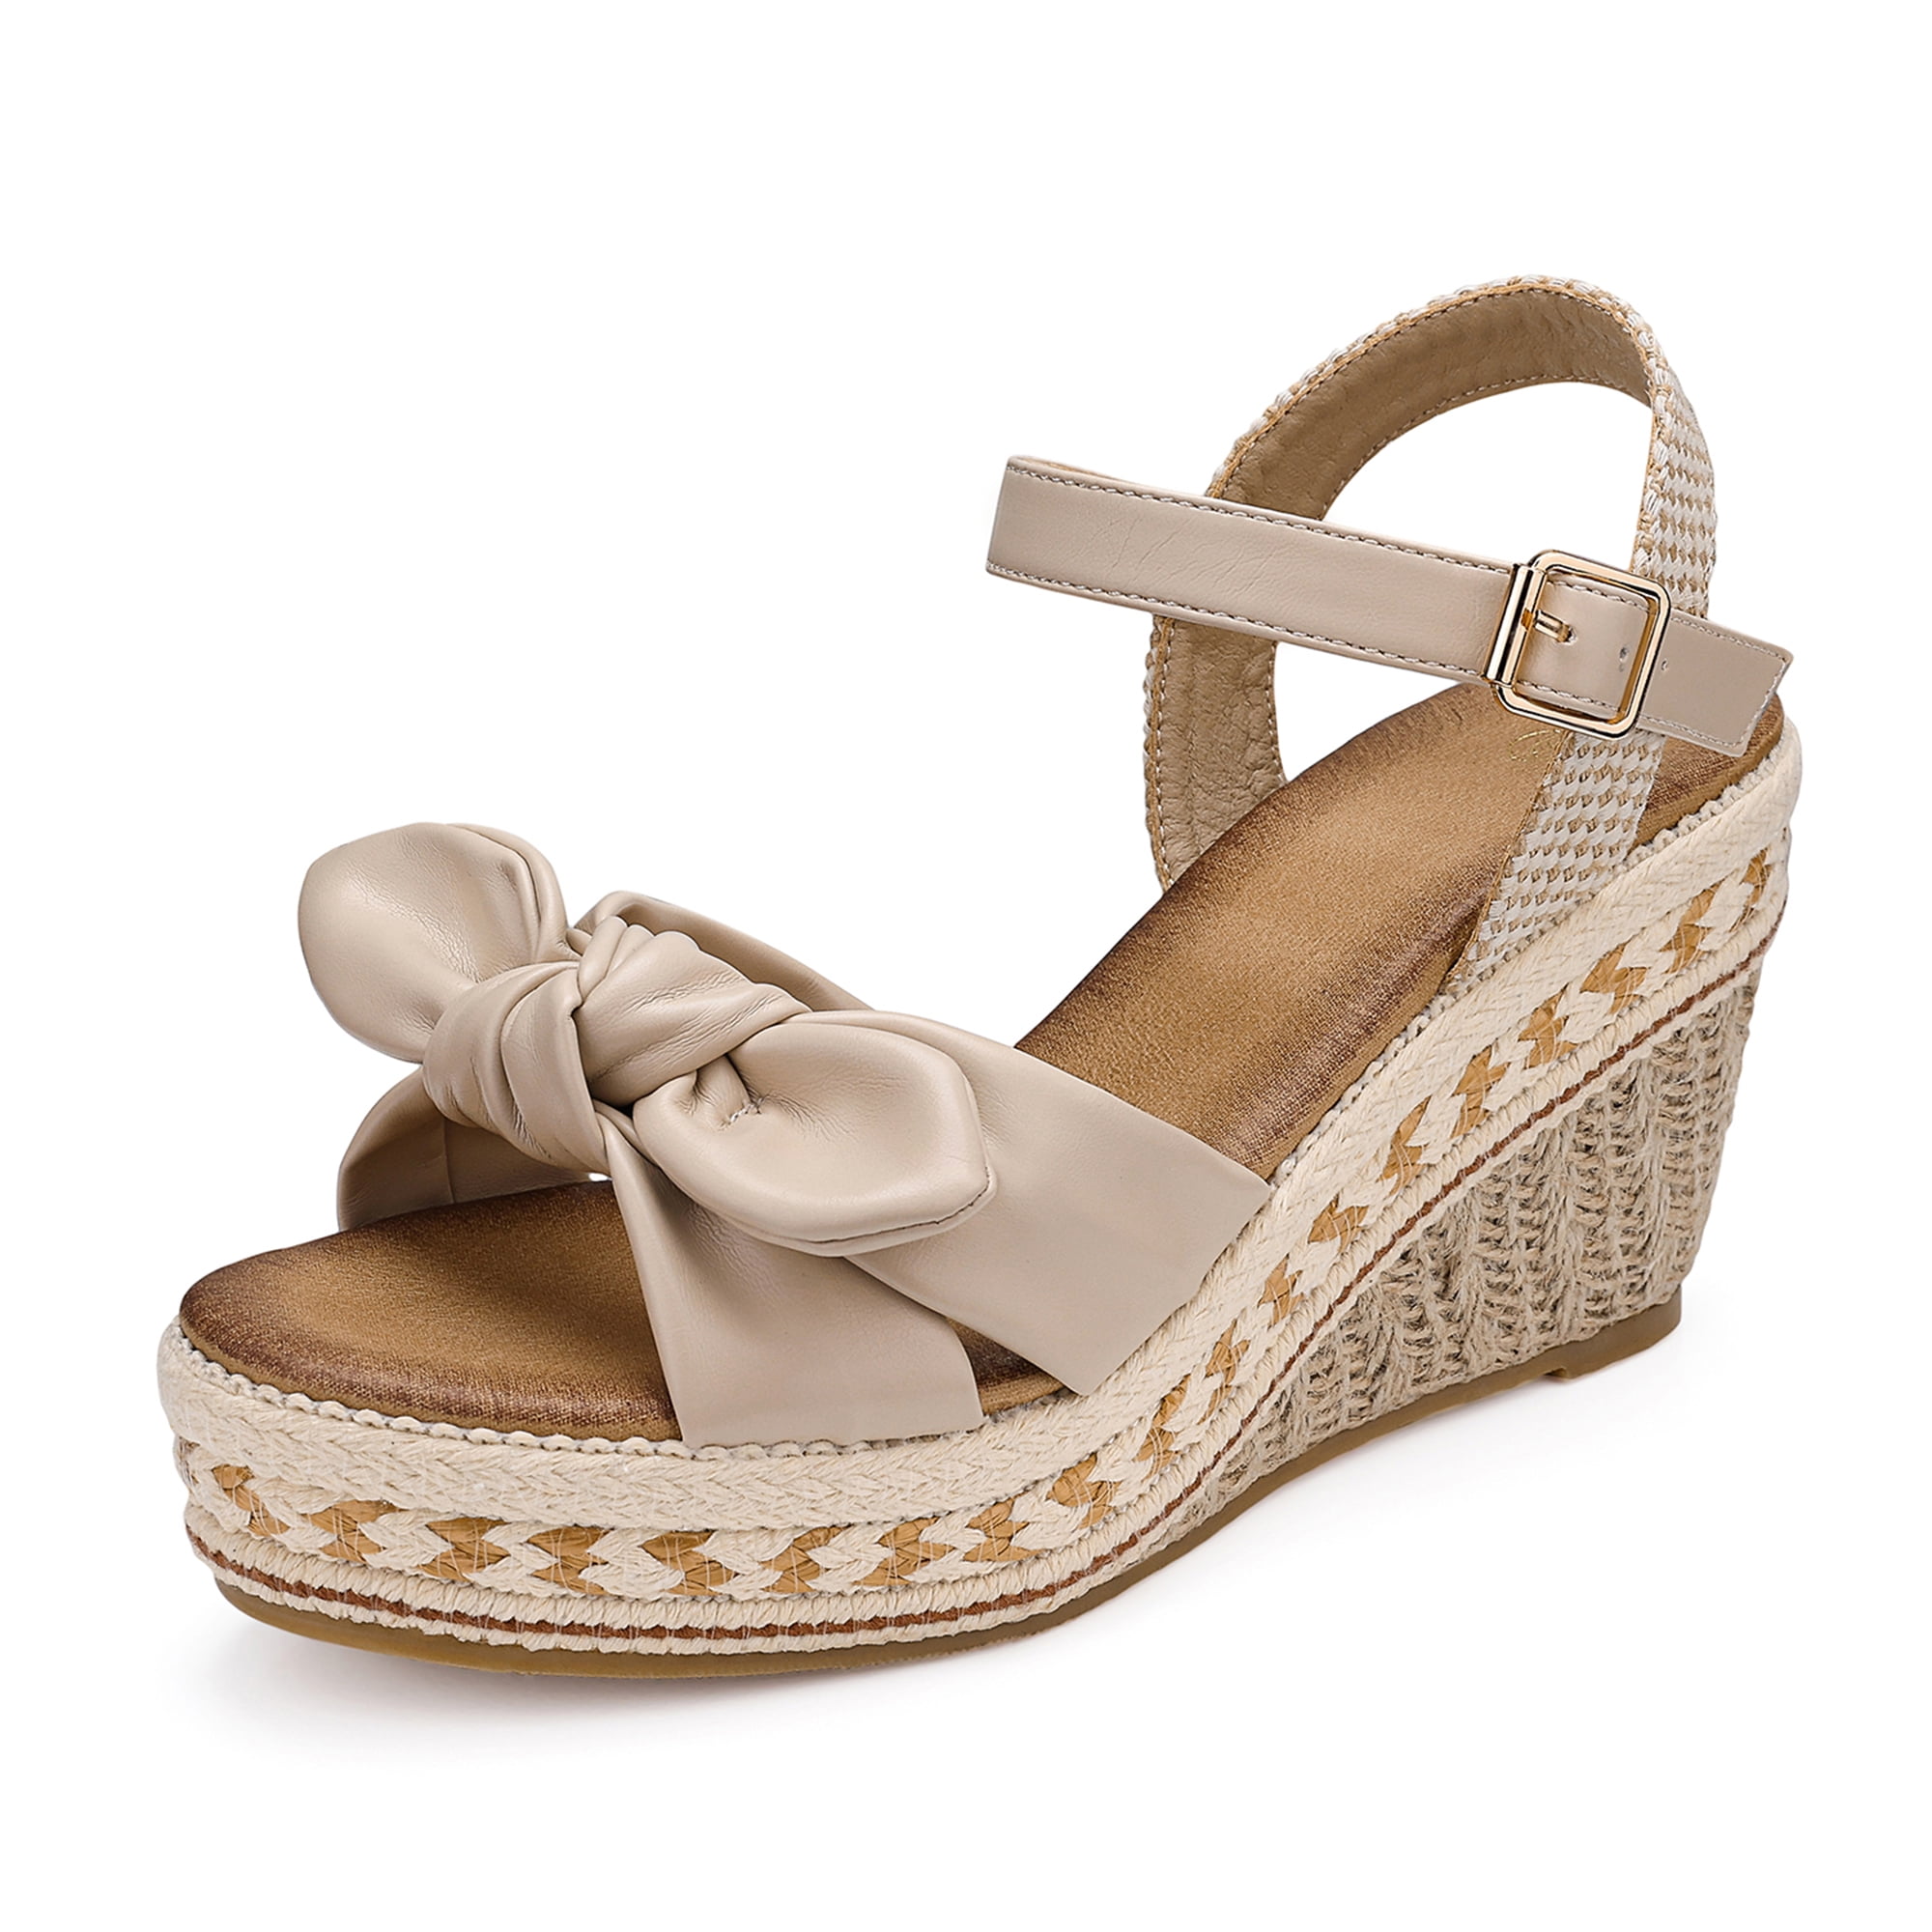 SHIBEVER Espadrilles for Women Open Toe Strap Wedge Heels Dressy Summer Platform Sandal Shoes Beige 9 - Walmart.com